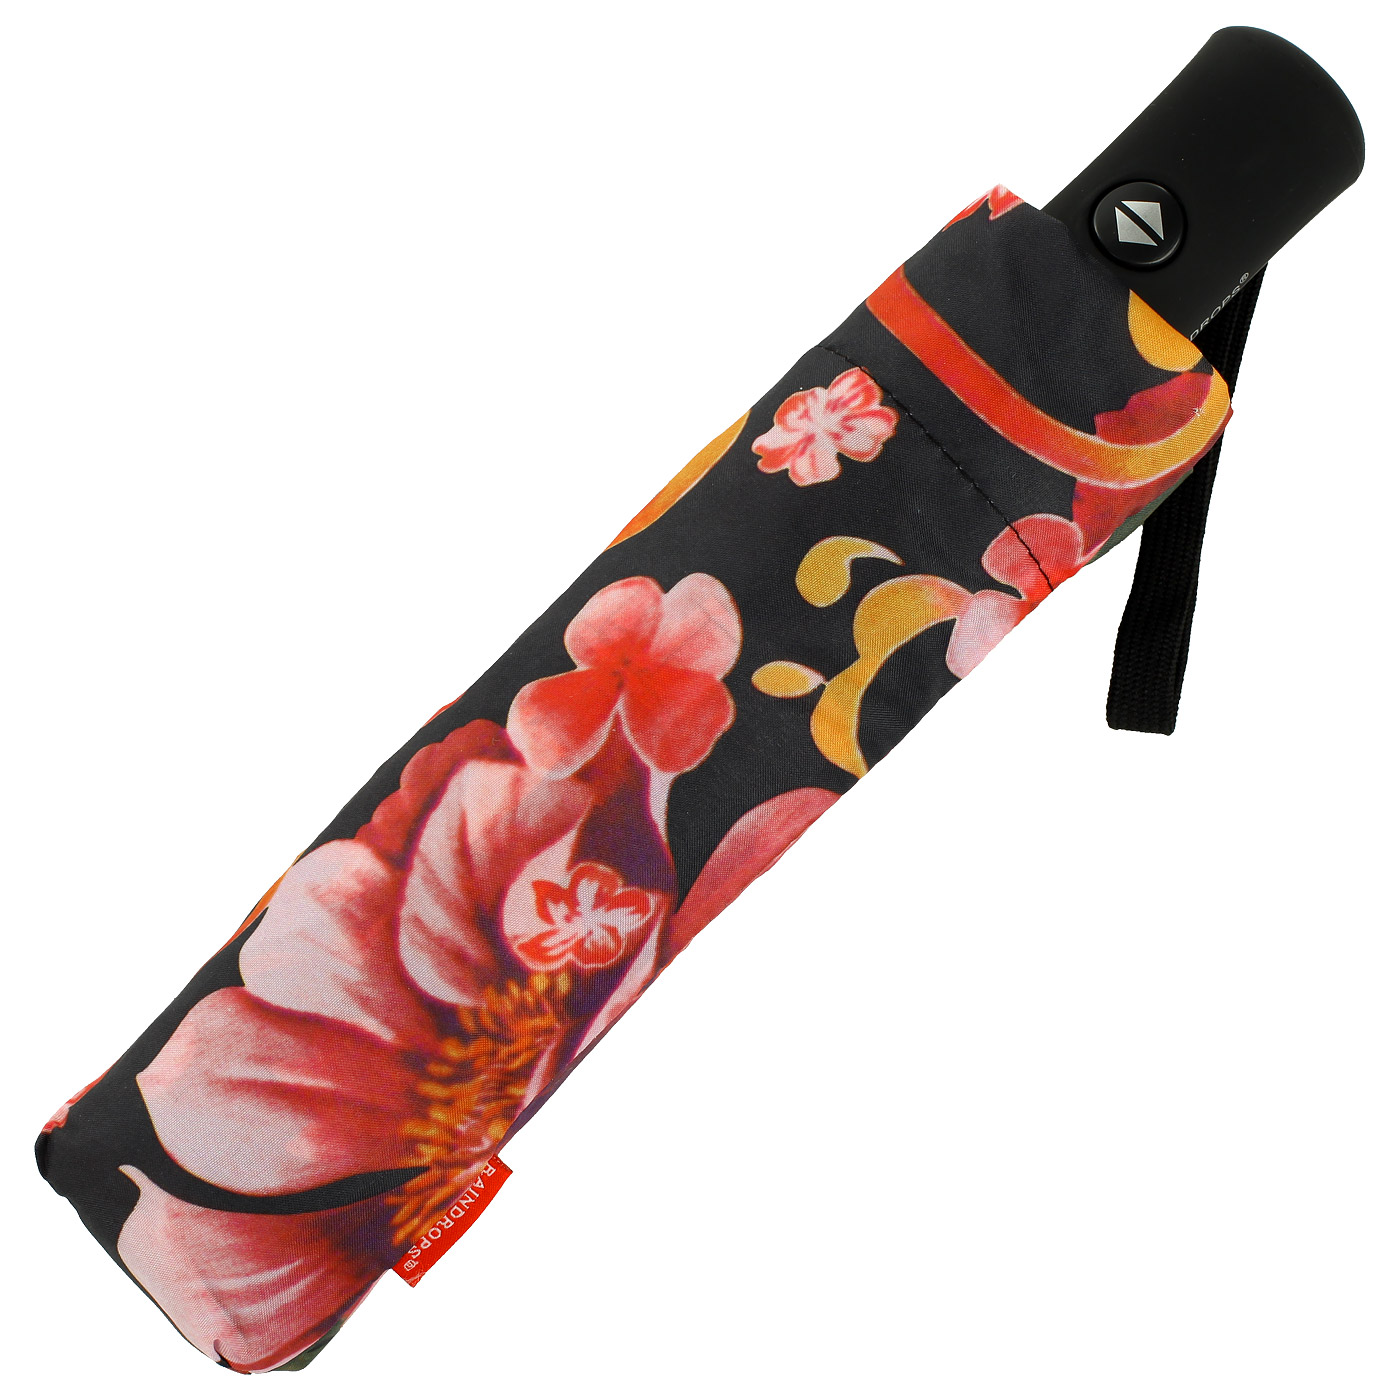 Складной зонт с цветочным принтом Raindrops 